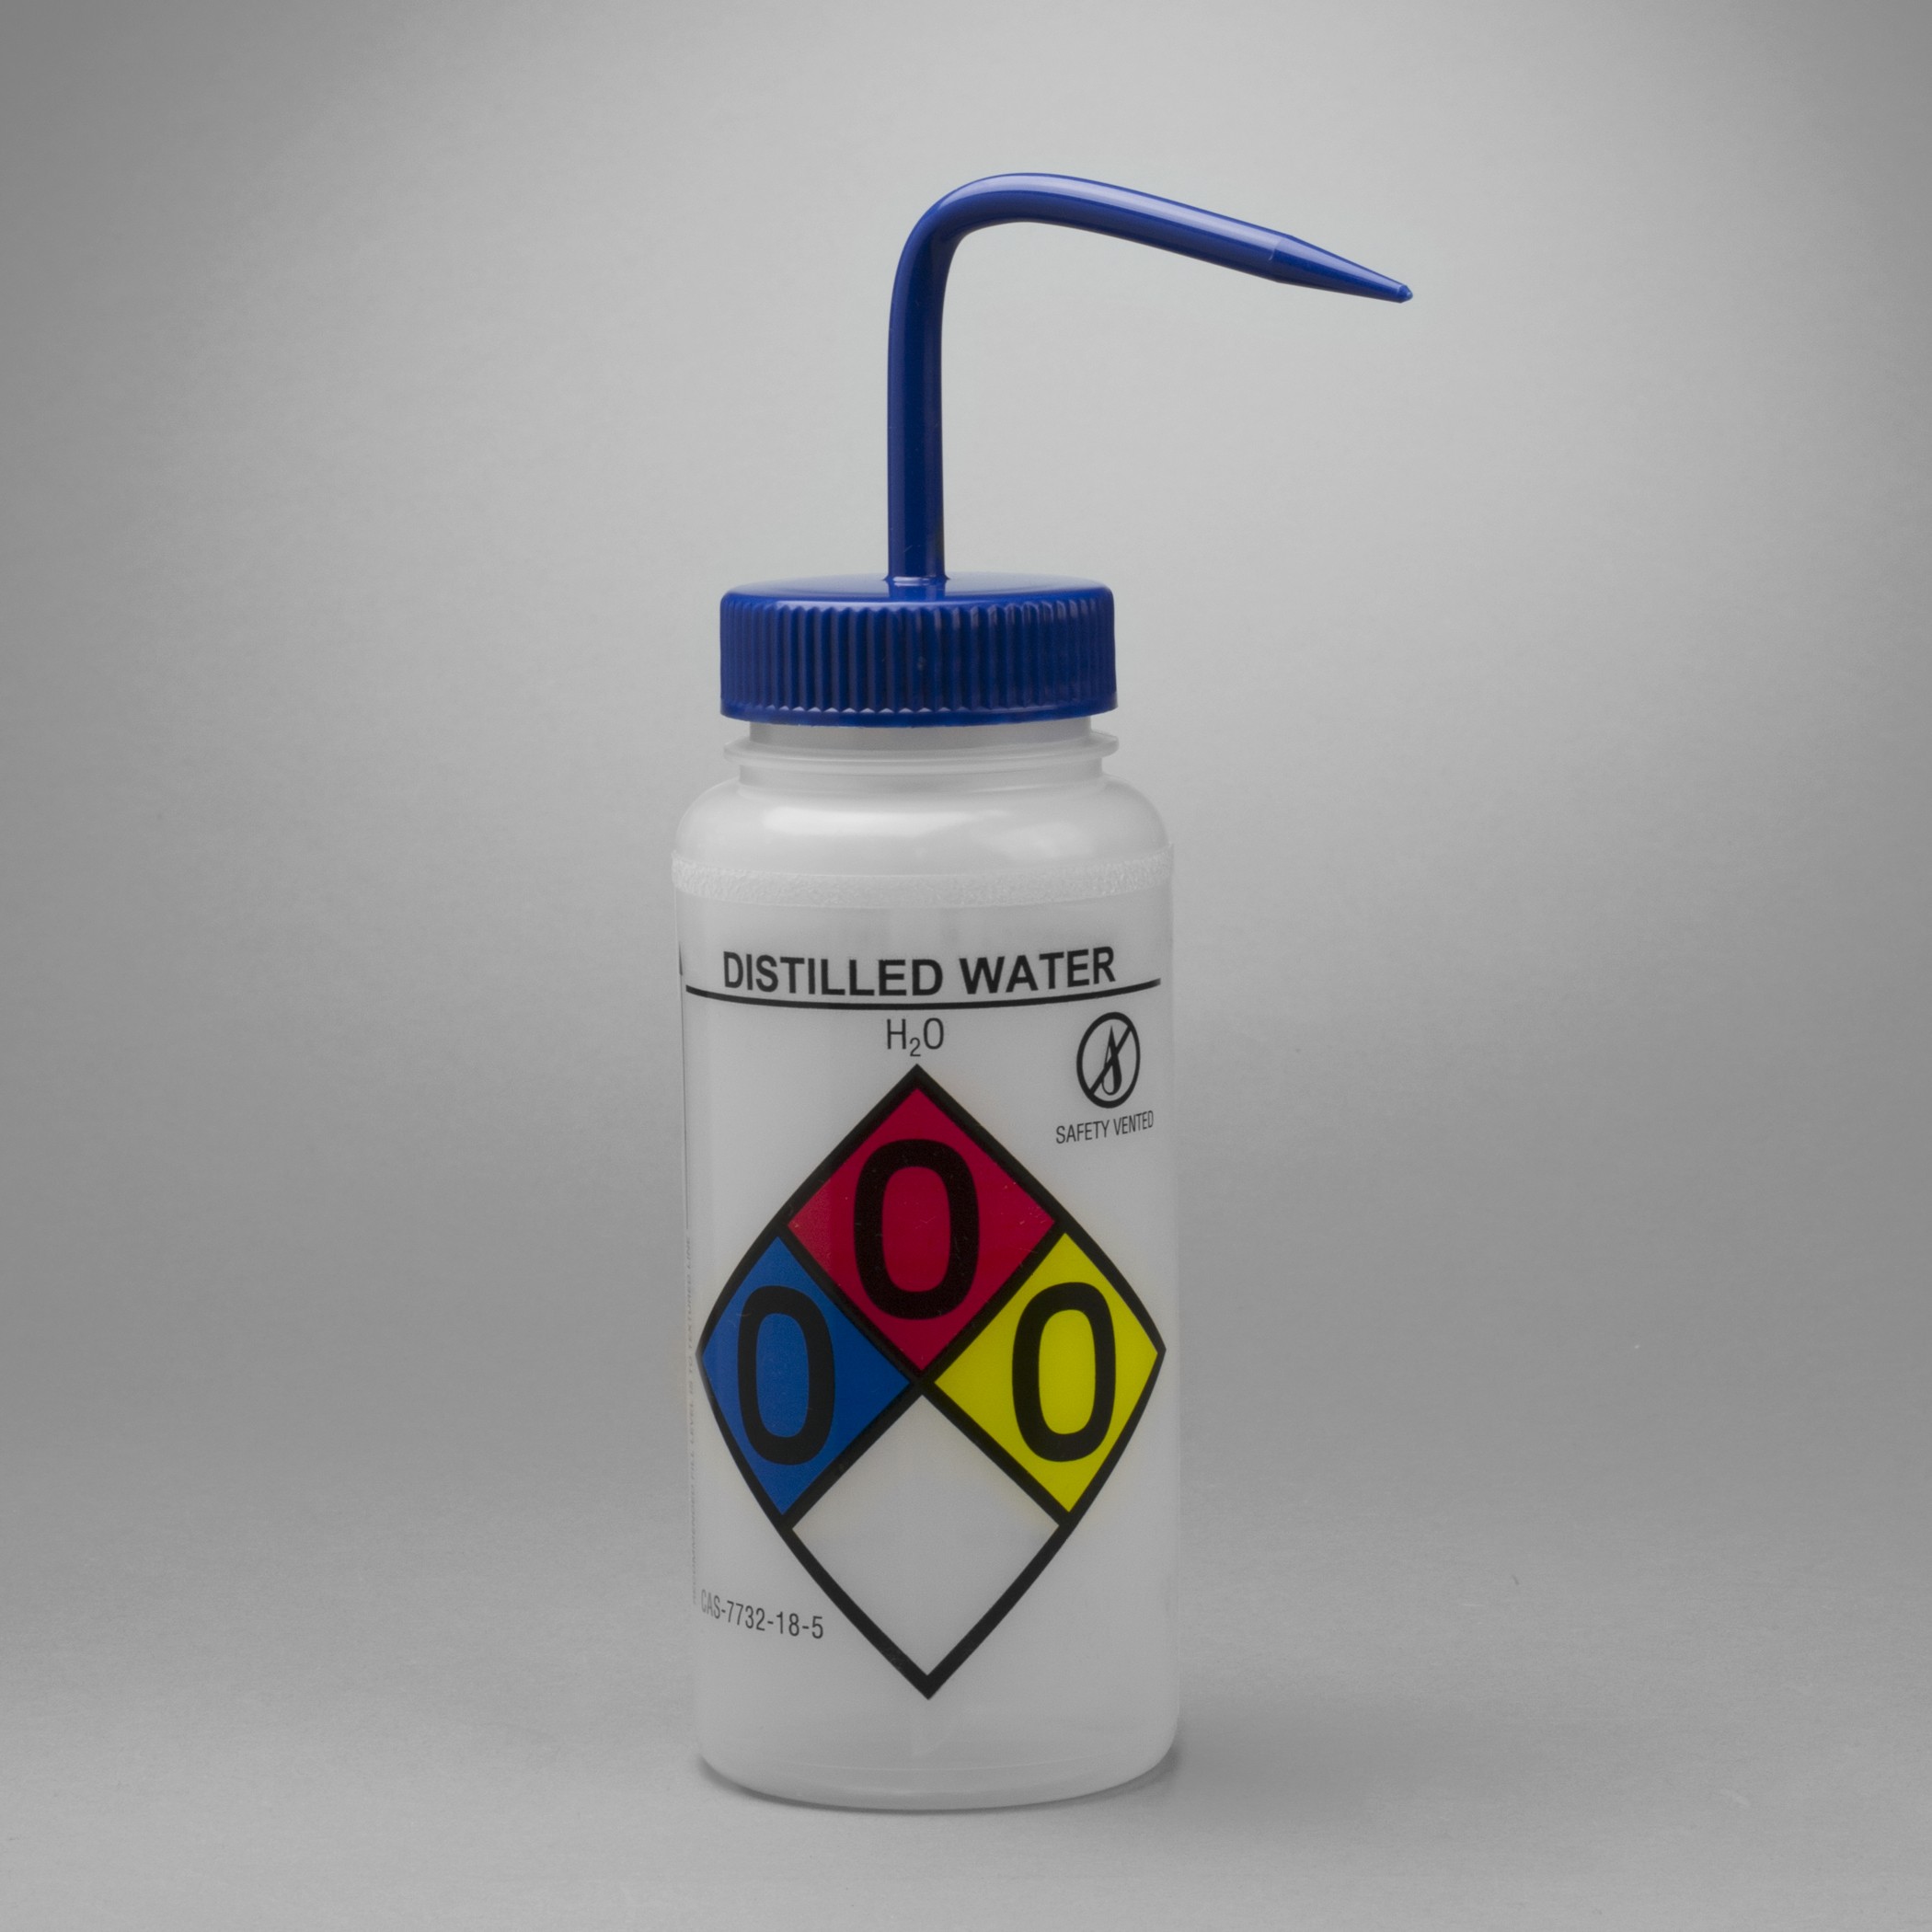 SP Bel-Art GHS Labeled Safety-Vented Distilled Water Wash Bottles; 500ml (16oz), Polyethylene w/Blue Polypropylene Cap (Pack of 4)